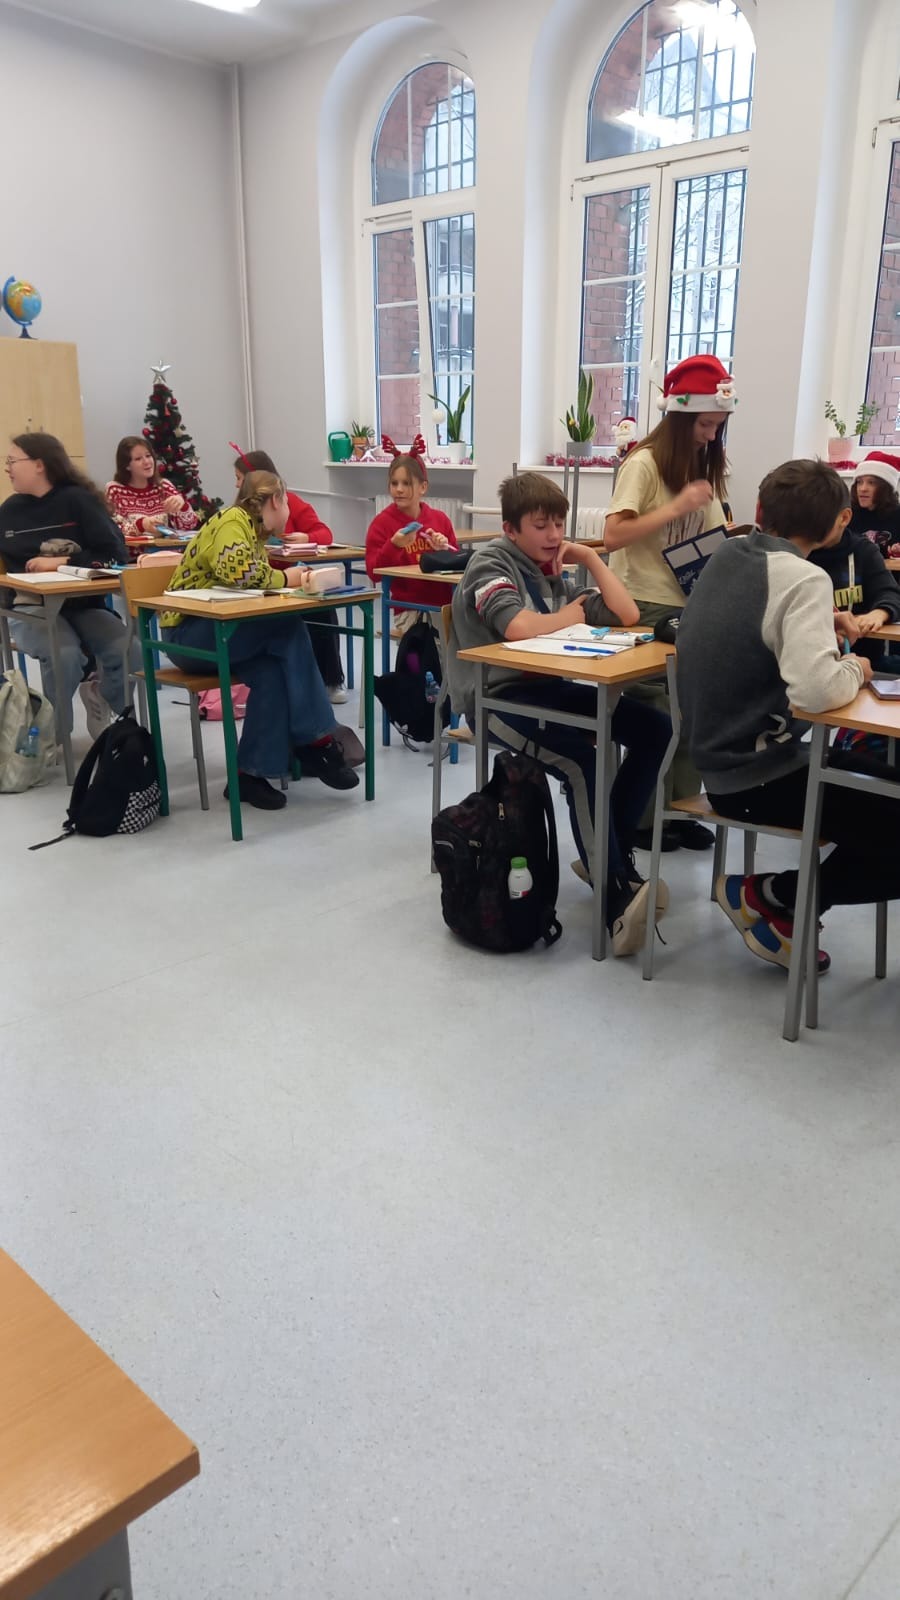 6 grudnia naszą szkołę odwiedził Święty Mikołaj, który wraz ze swoimi elfami rozdawał wszystkim uczniom czekolady zakupione i sfinansowane przez Radę Rodziców.